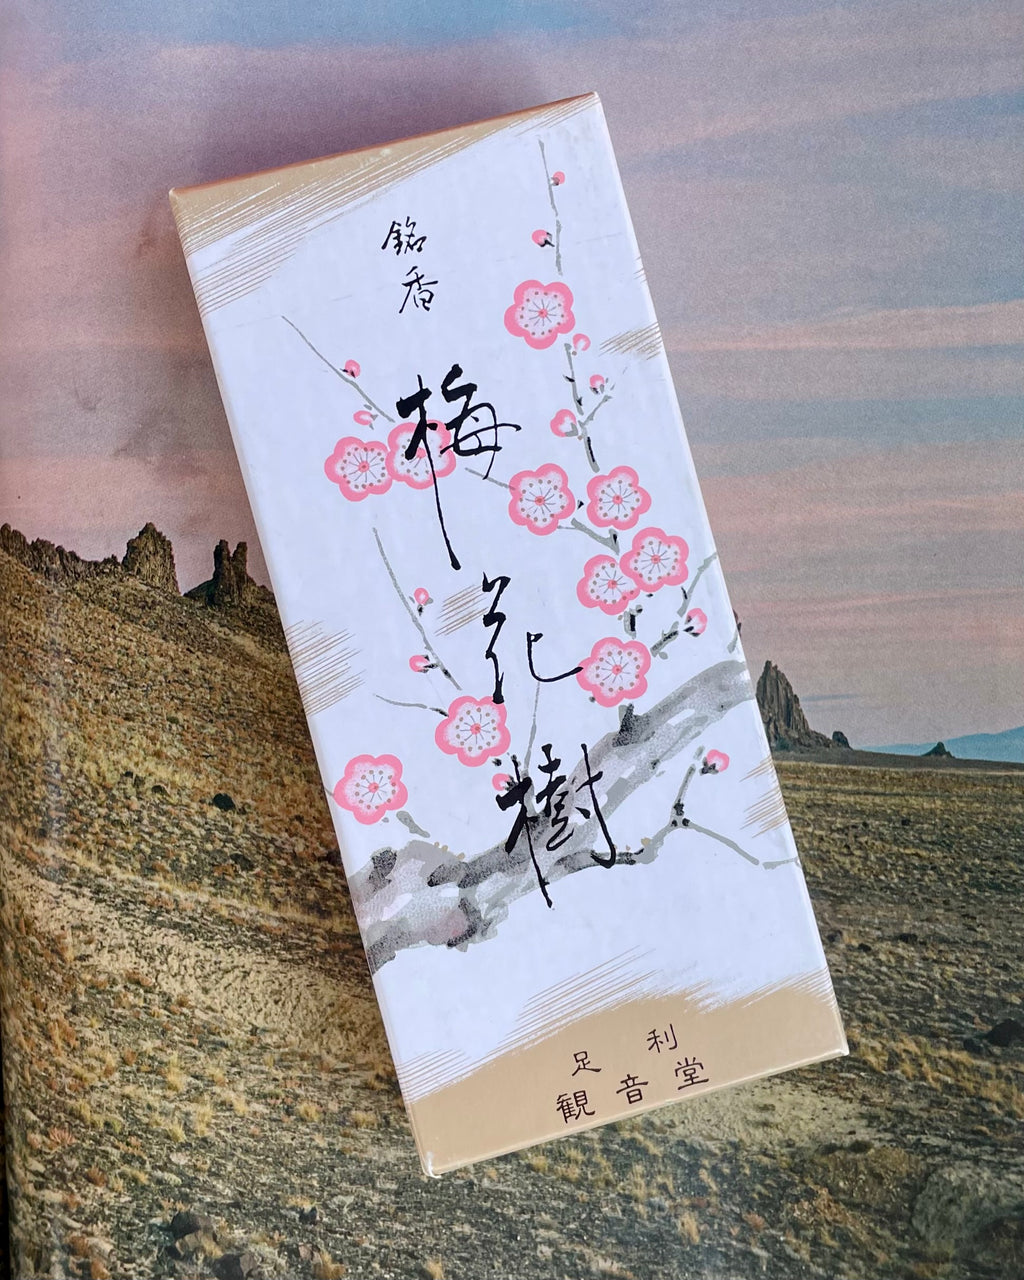 Shoyeido Incense - Plum Blossoms "Baika-ju"